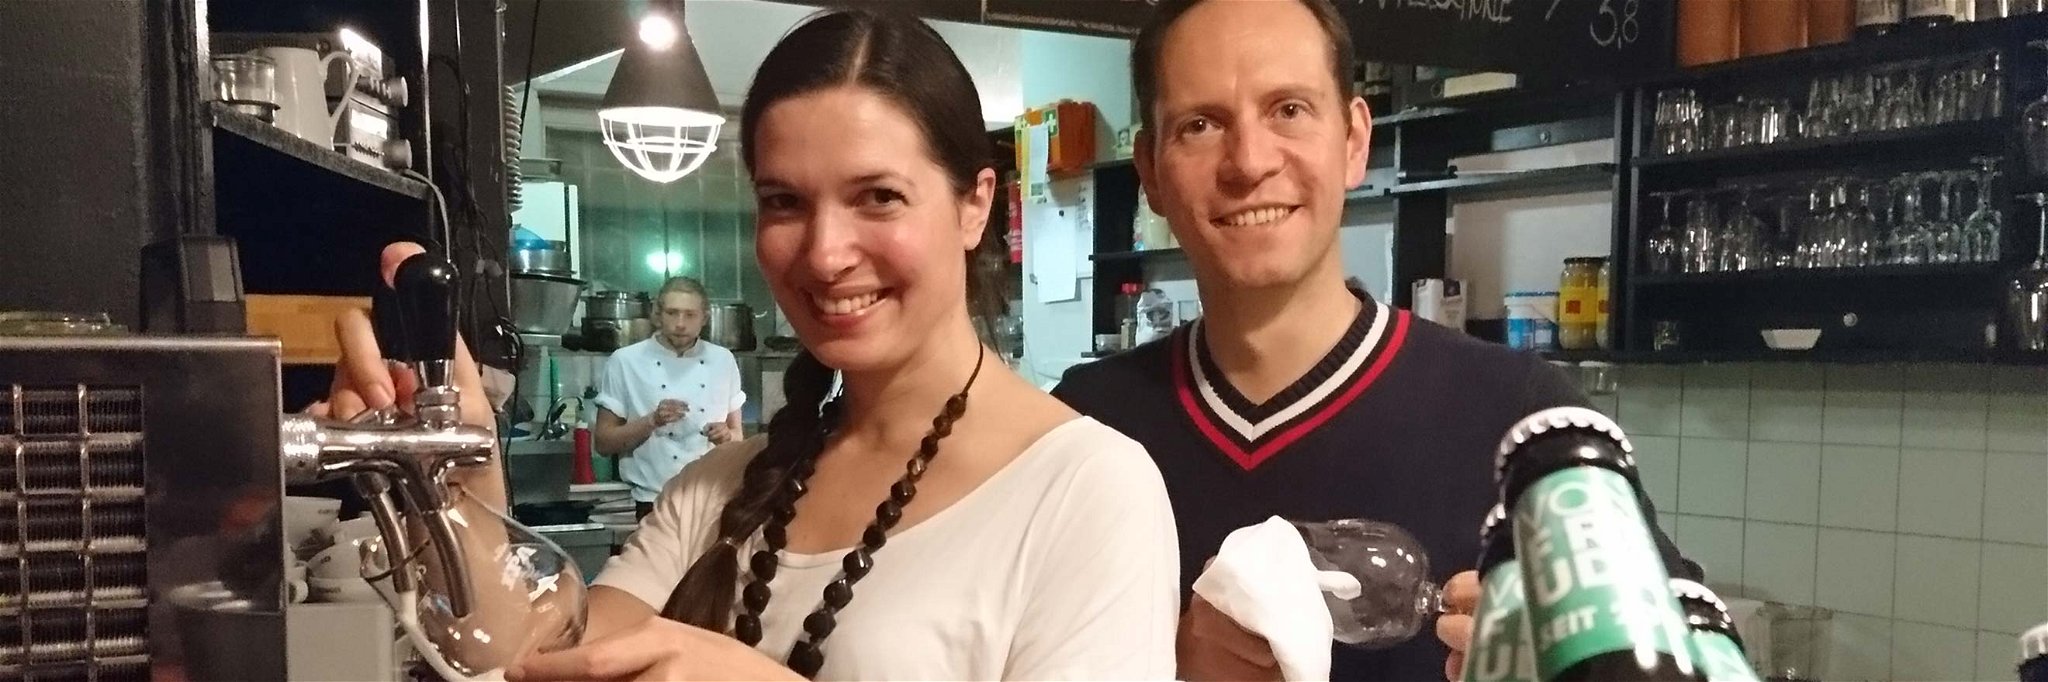 Natalie von Freude und Martin Schupeta feiern ihre vierjährige Brauerei mit einem Pop-Up.